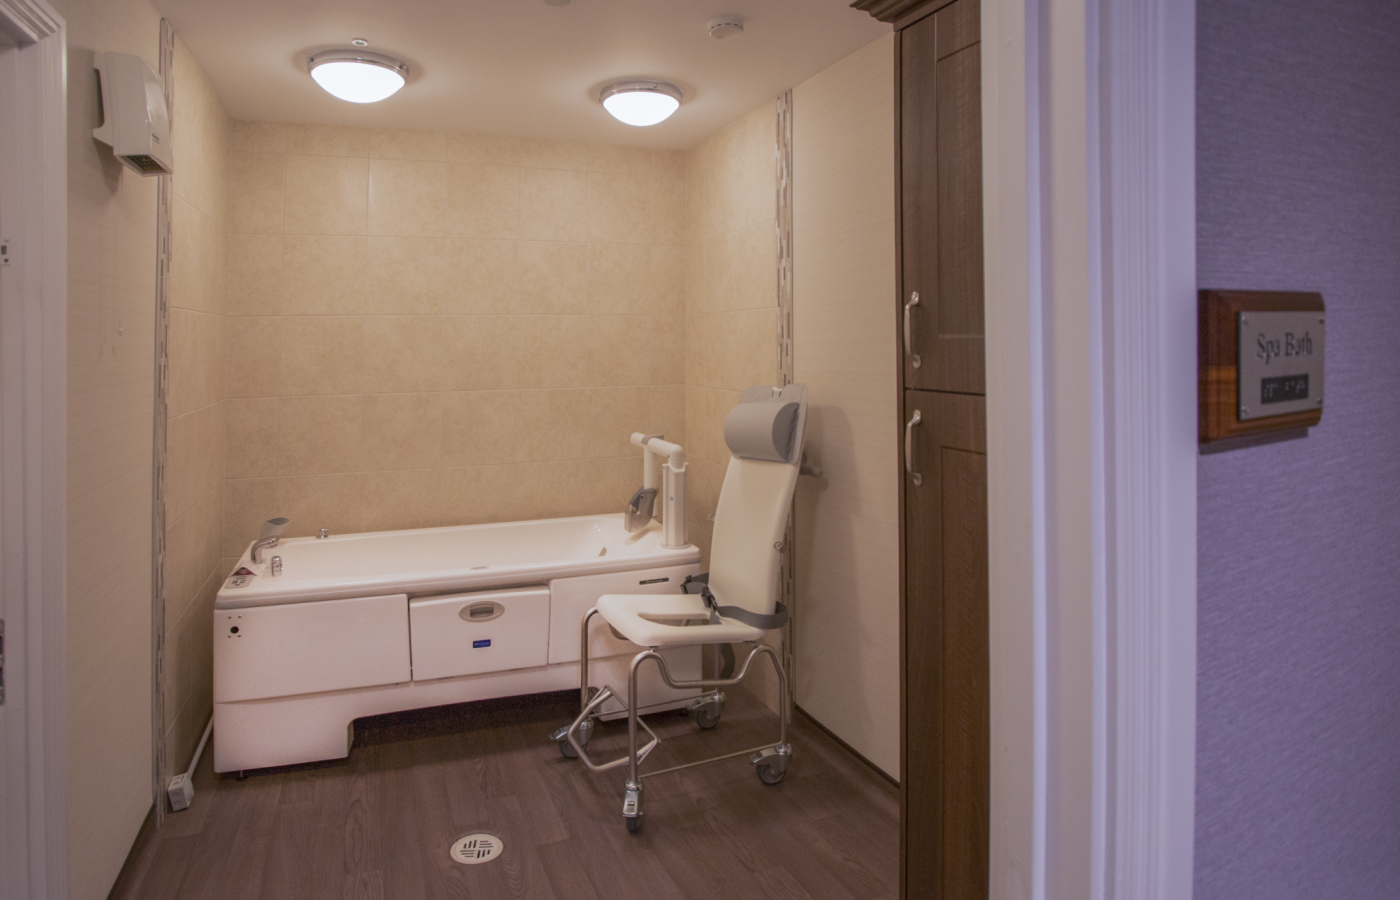 spa bath from care home interior refurbishment